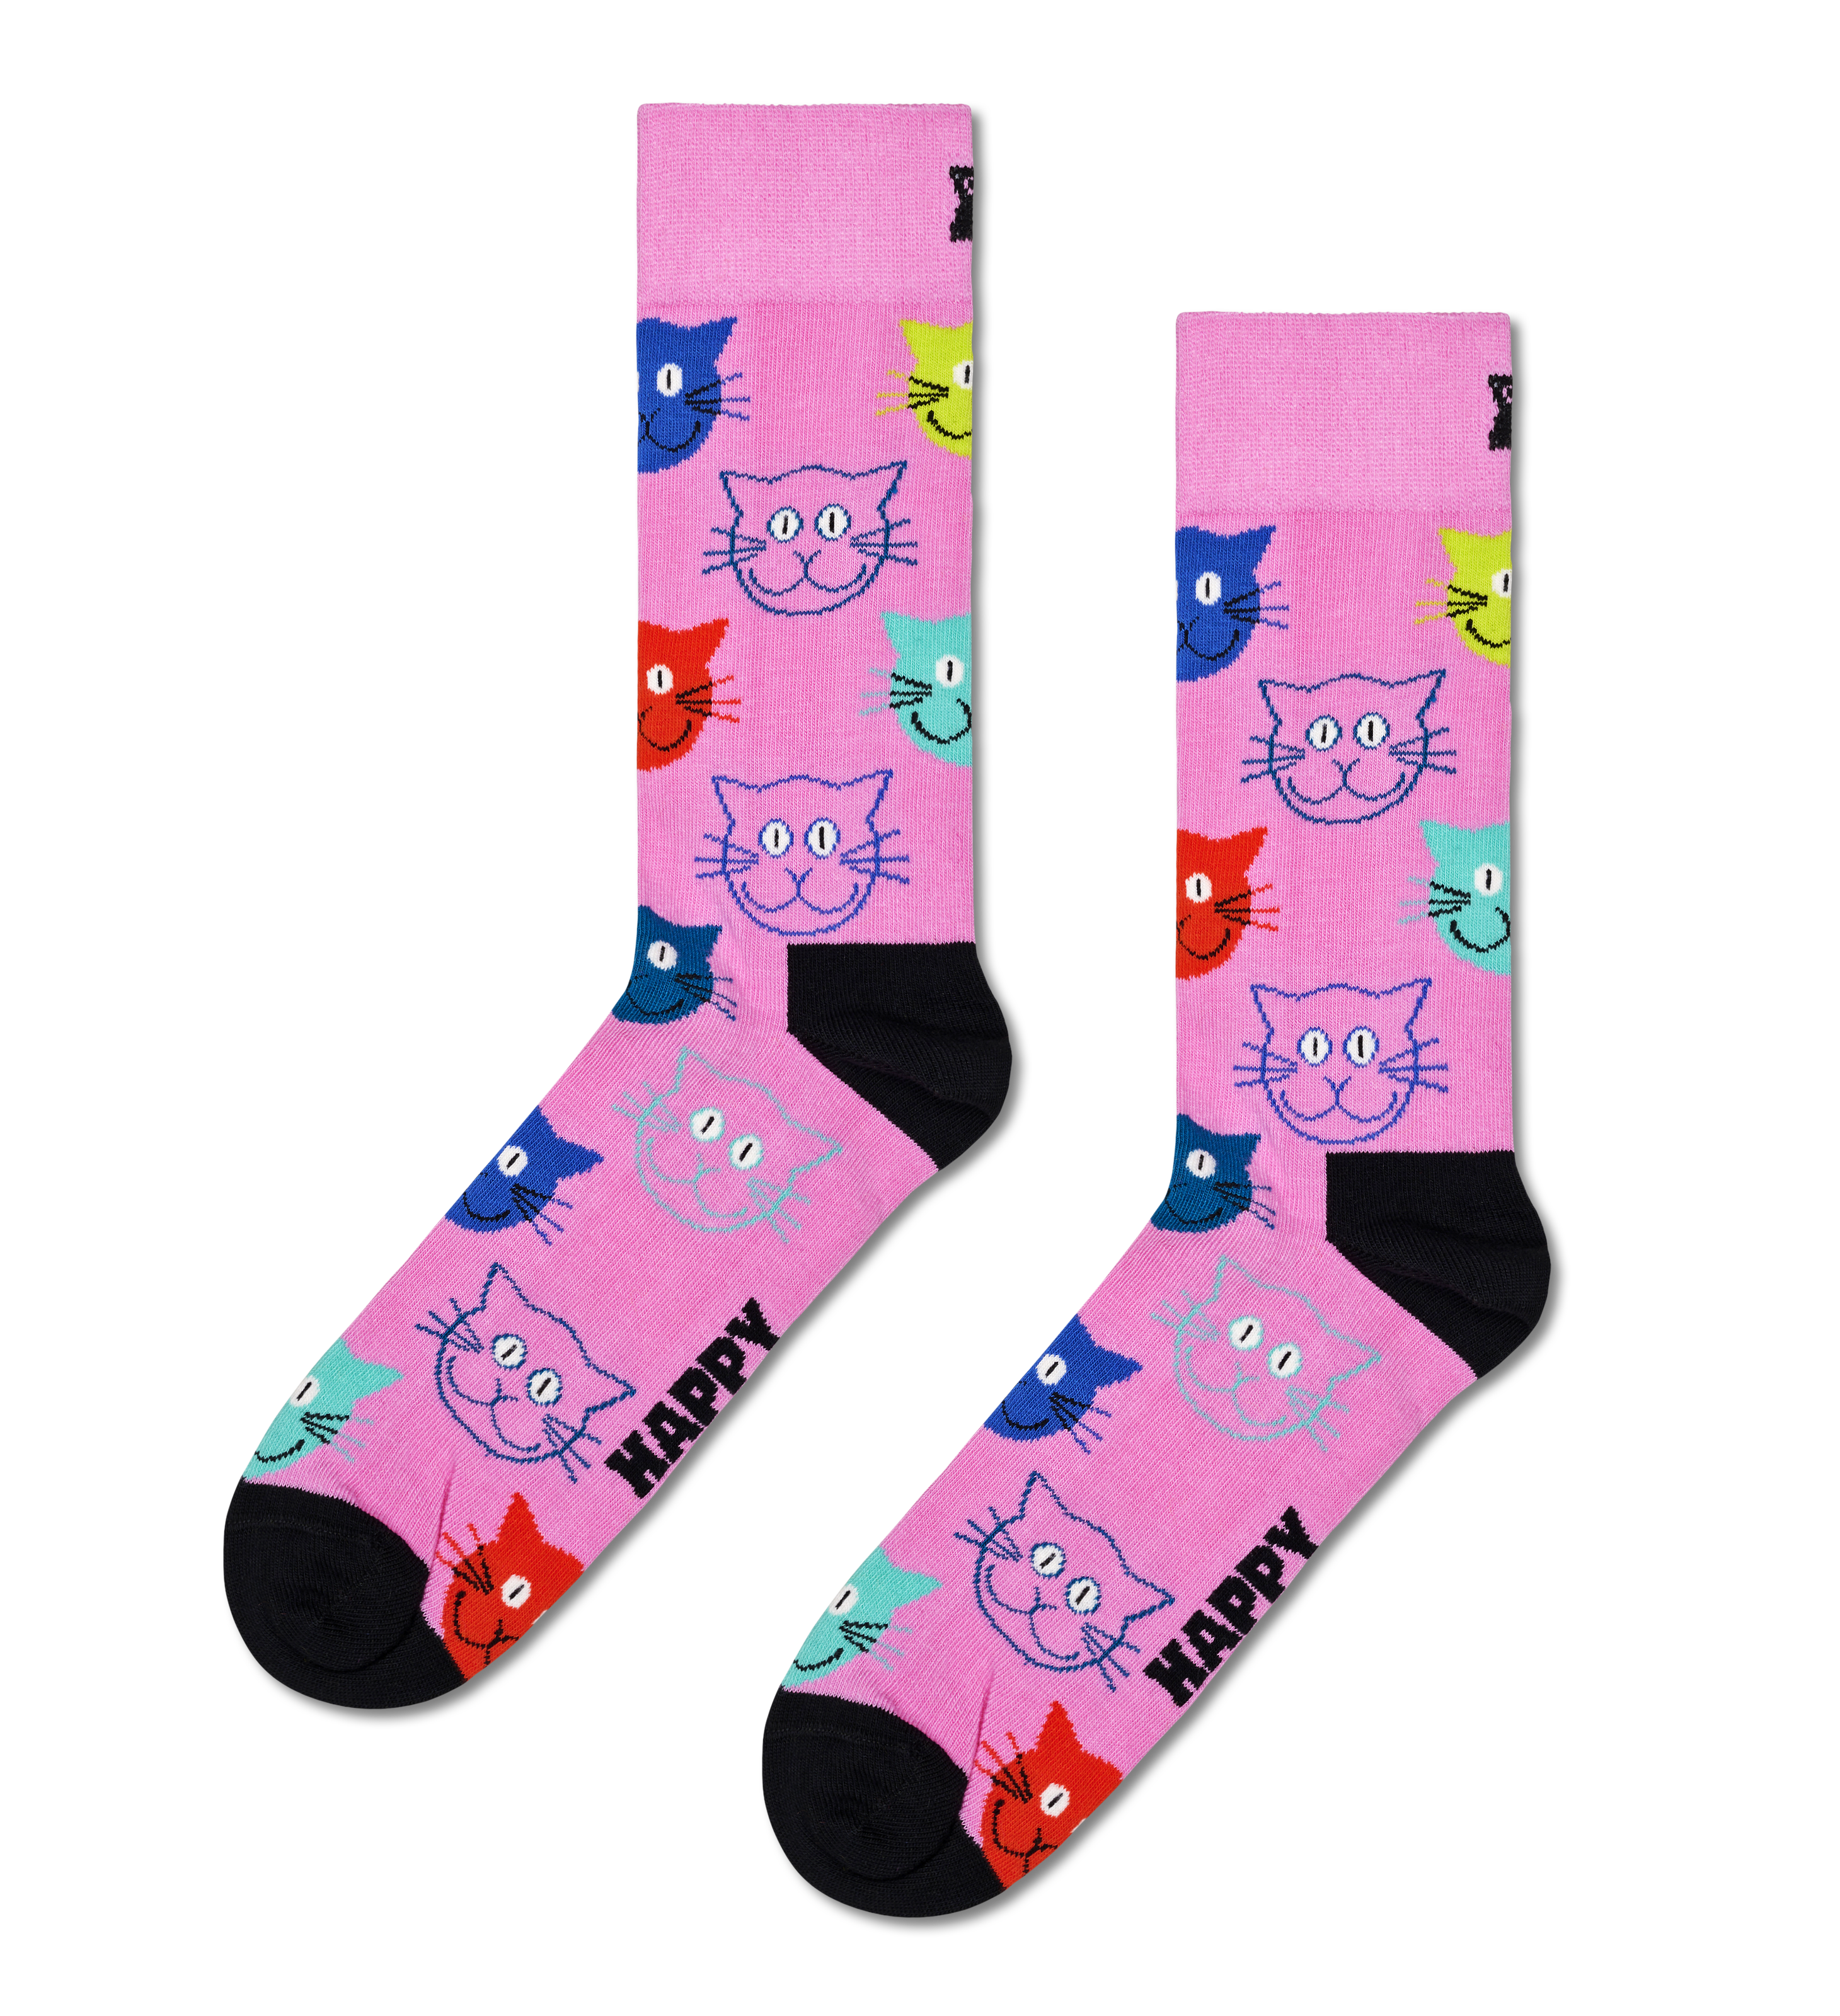 Men's Socks Happy Socks Dog02-9050 - MULTICOLOR